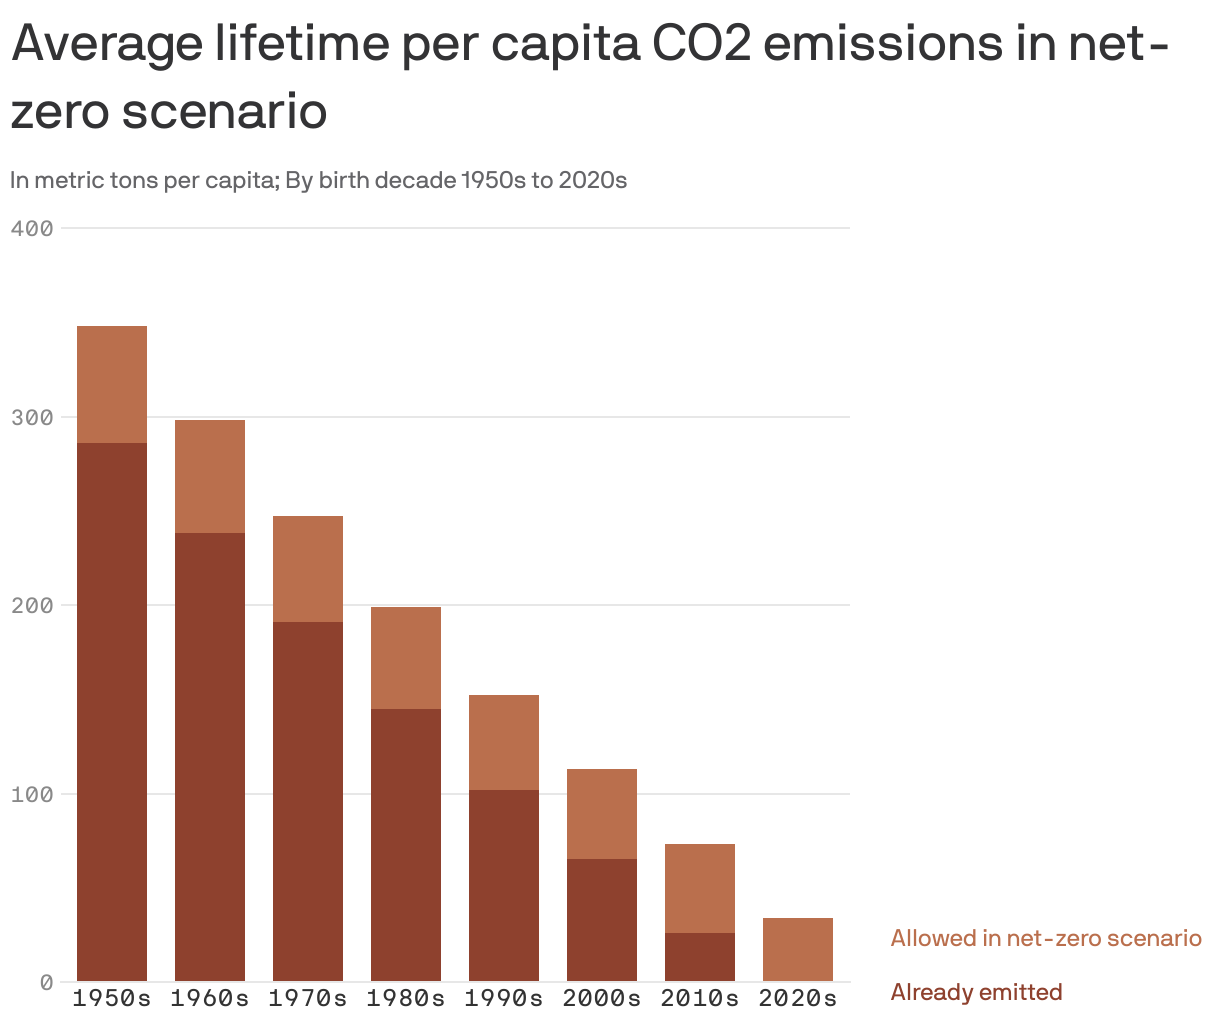 Average lifetime per capita CO2 emissions in net-zero scenario